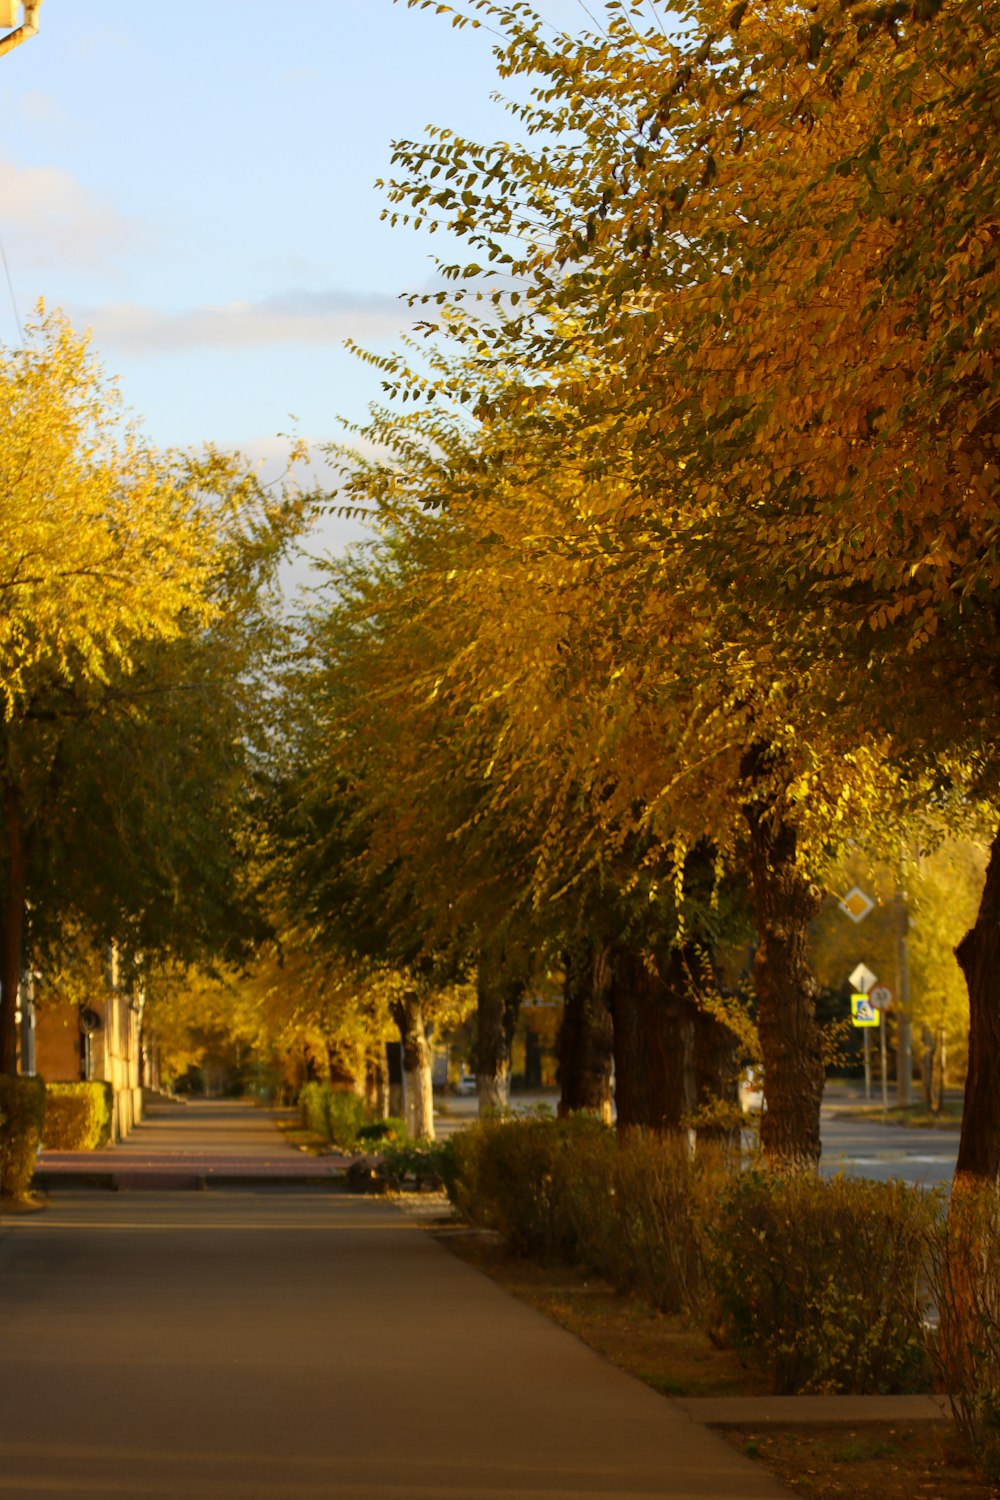 una strada fiancheggiata da molti alberi con foglie gialle